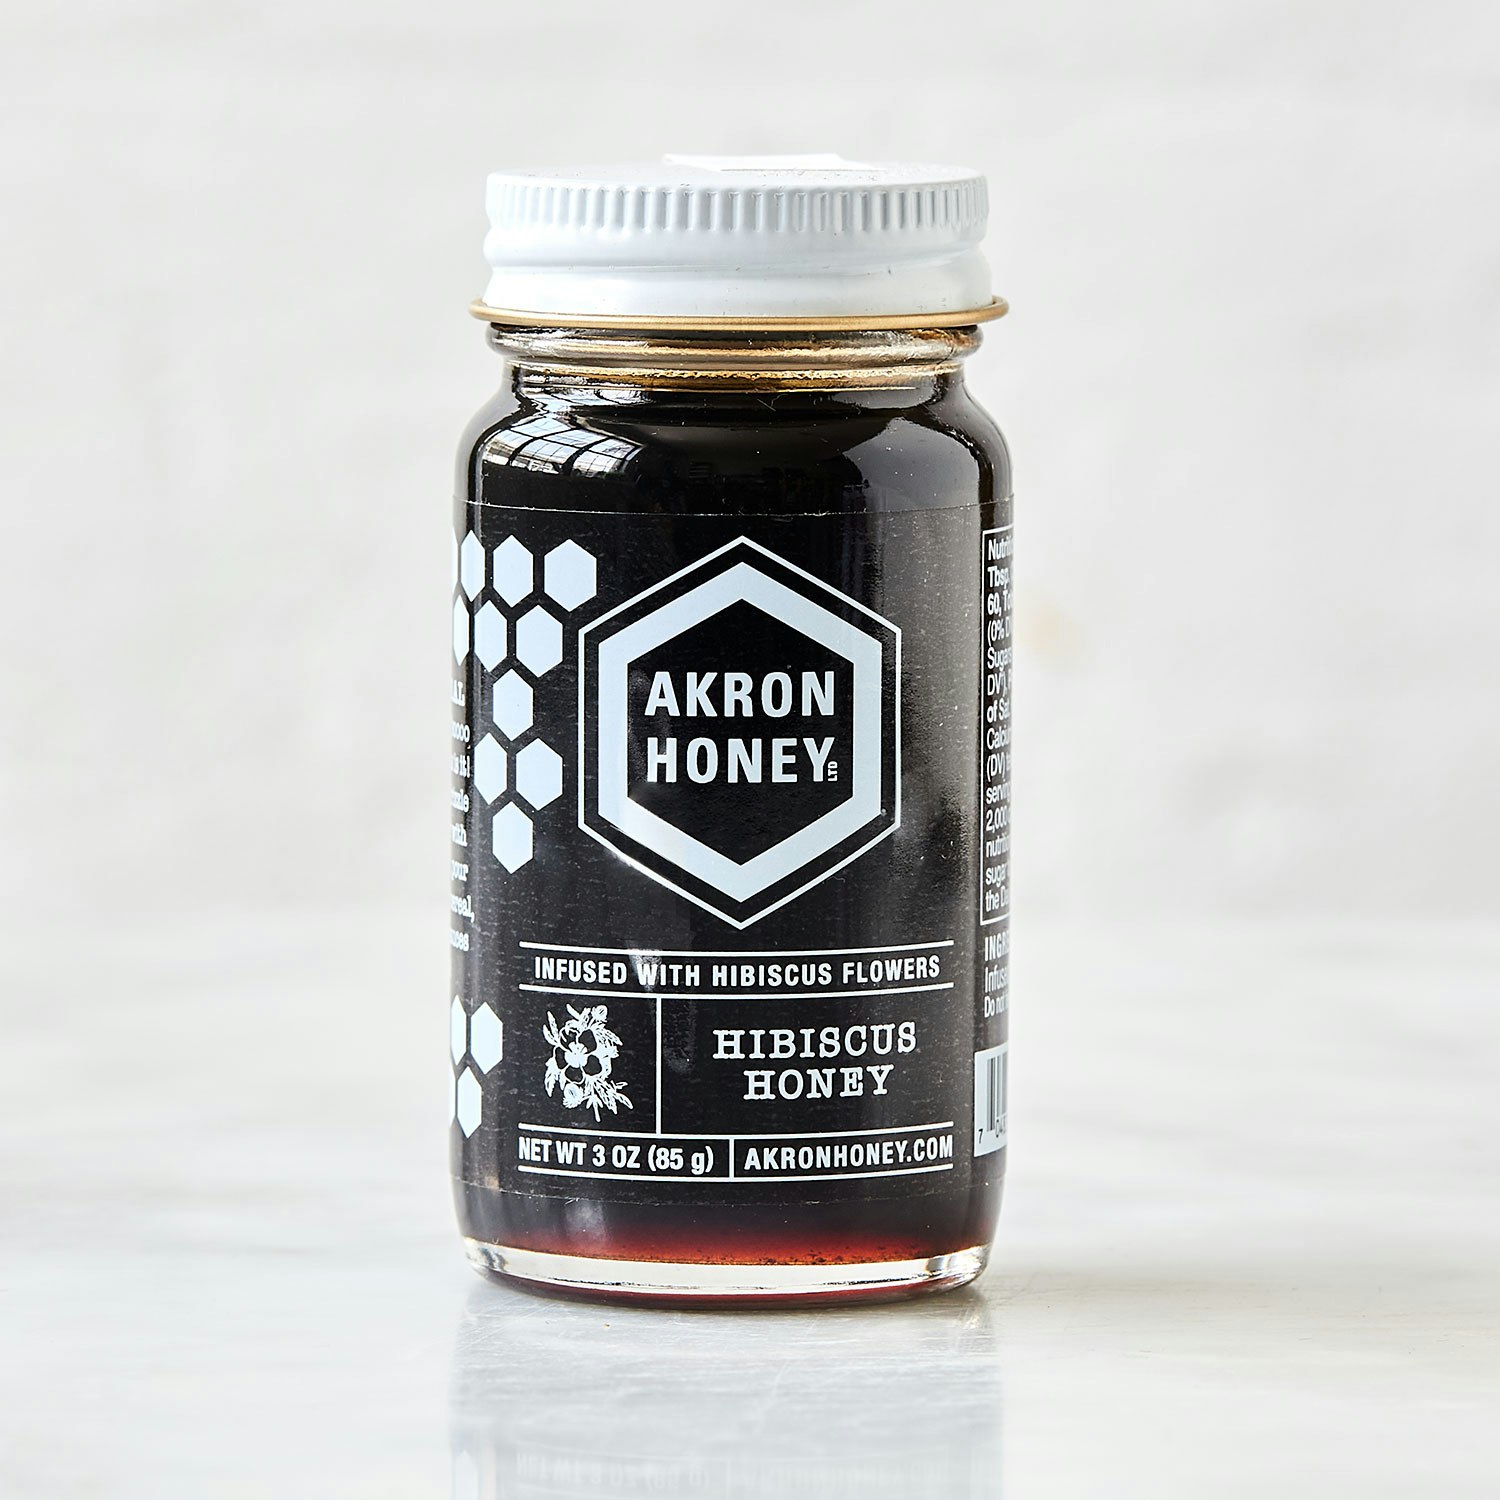 Akron Honey Hibiscus Honey specialty foods